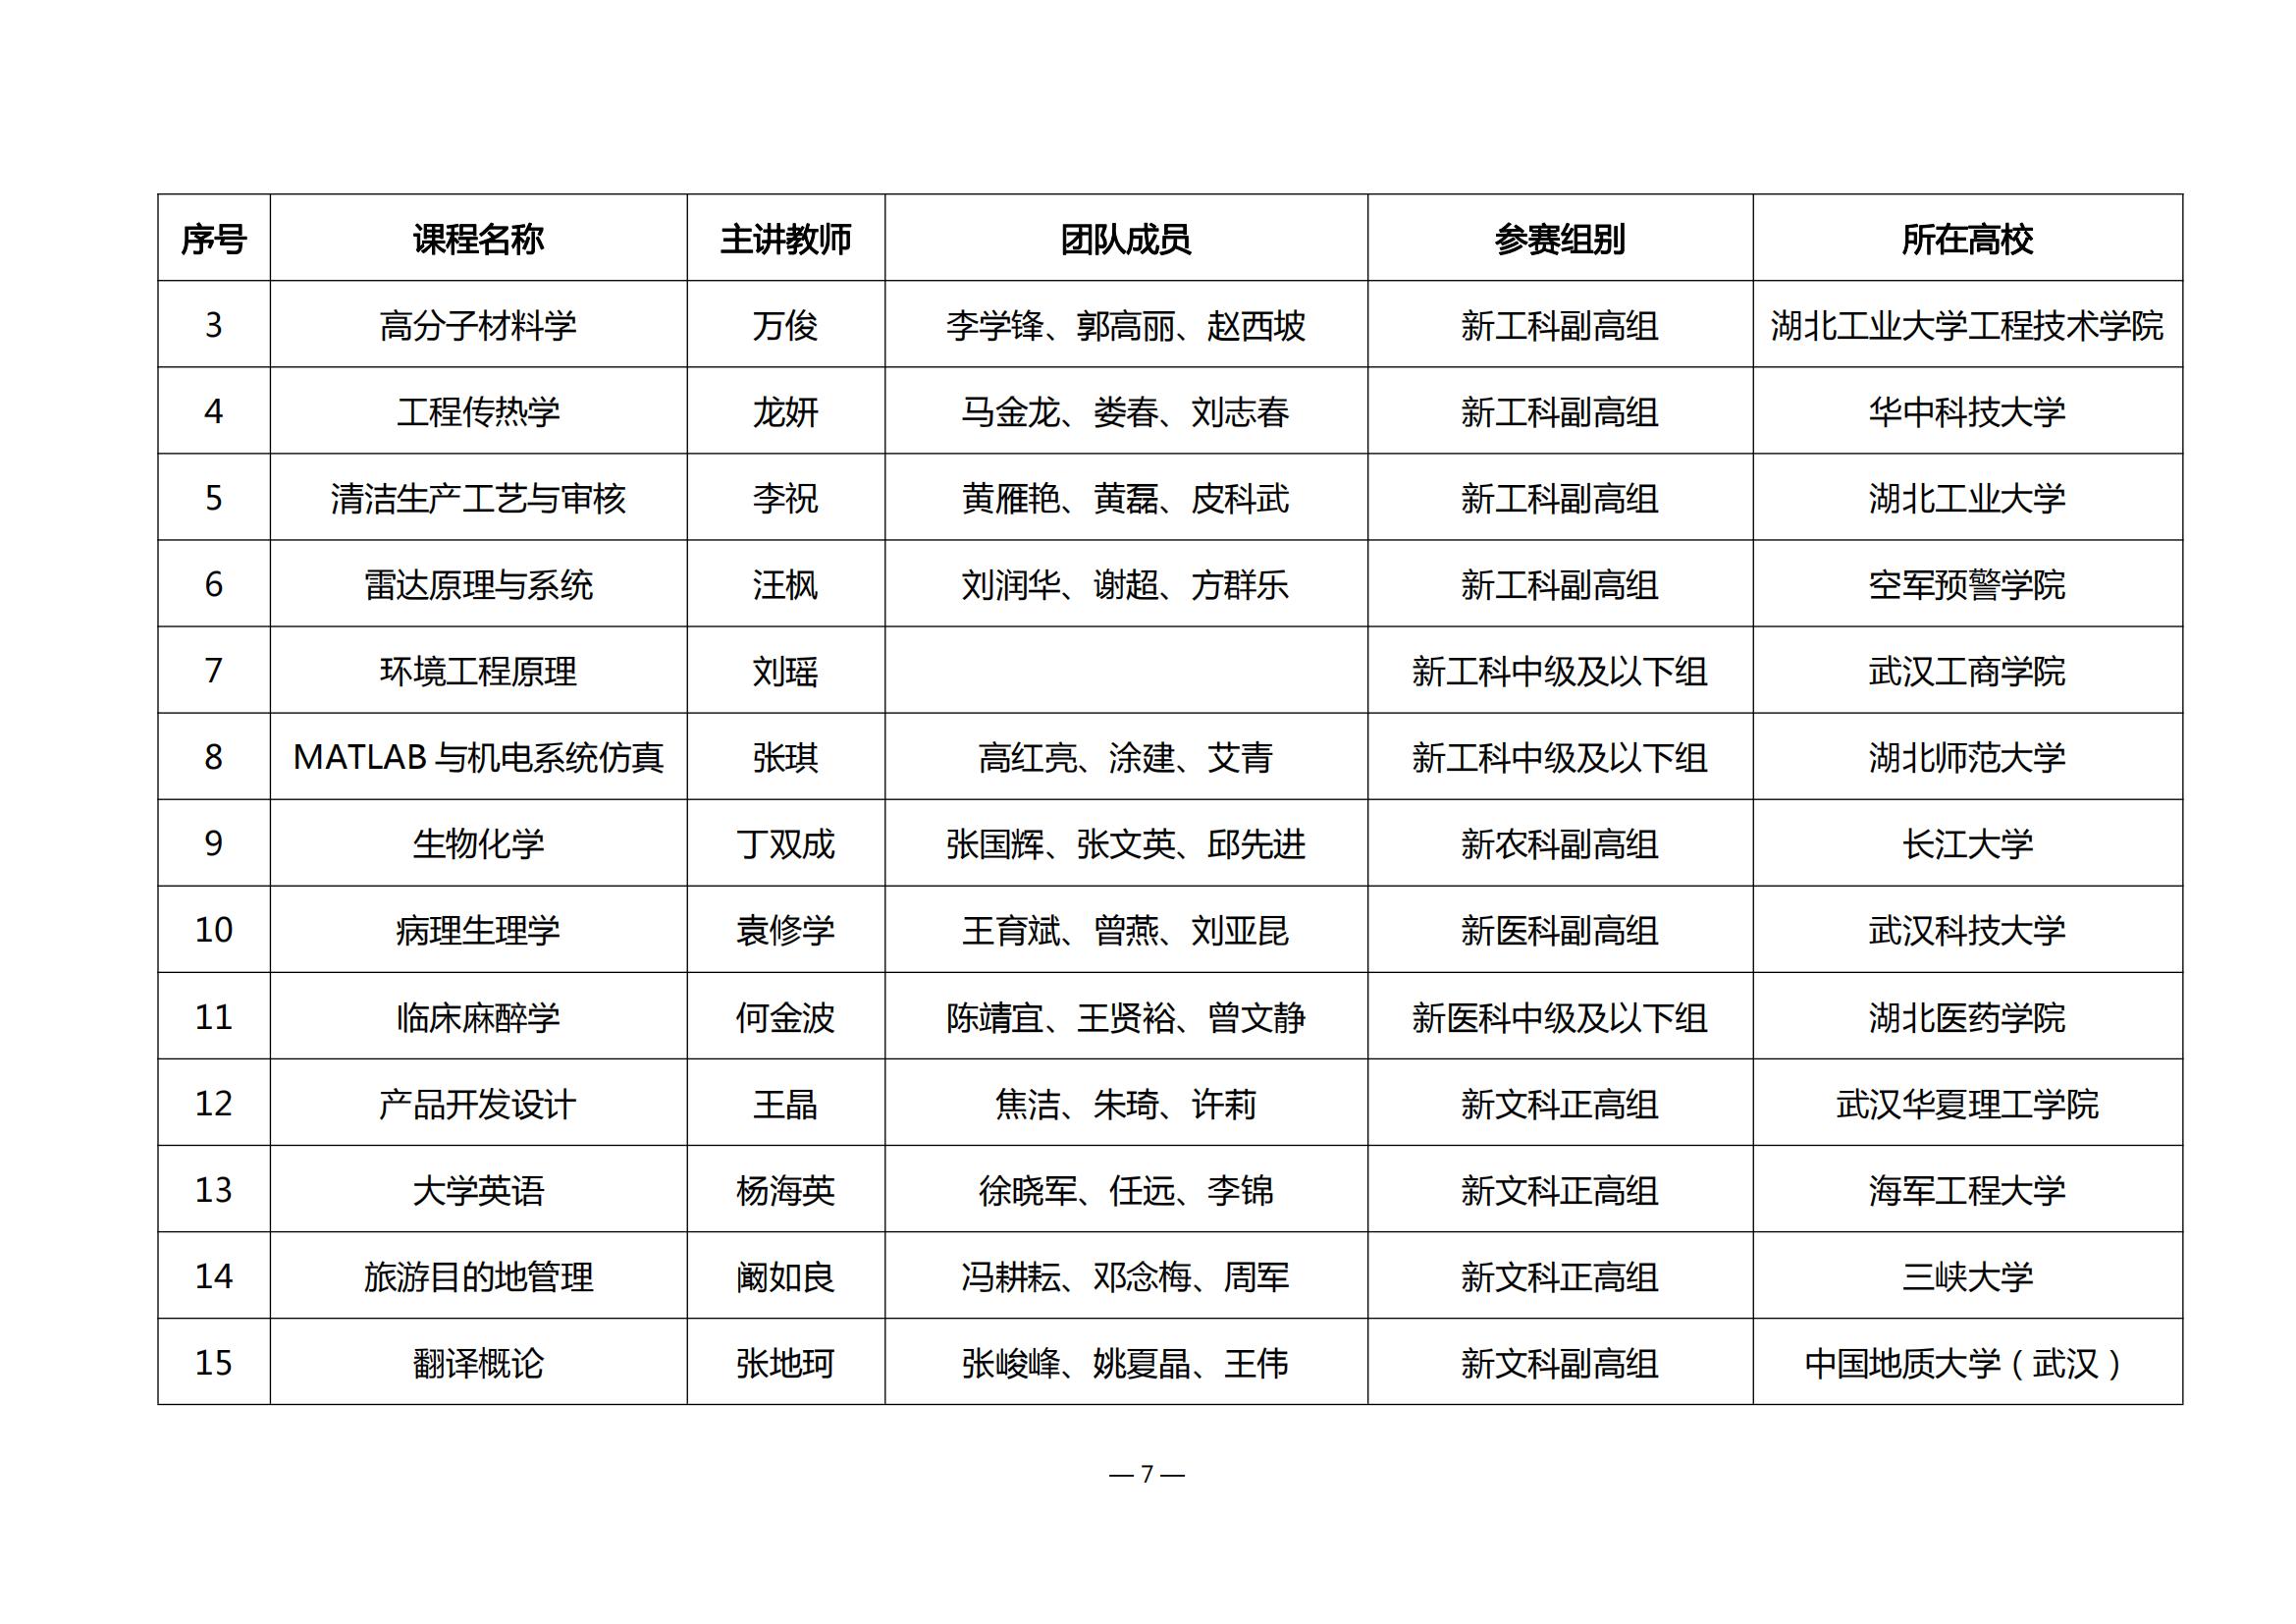 第四届湖北省高校教师教学创新大赛评审结果公示_06.jpg